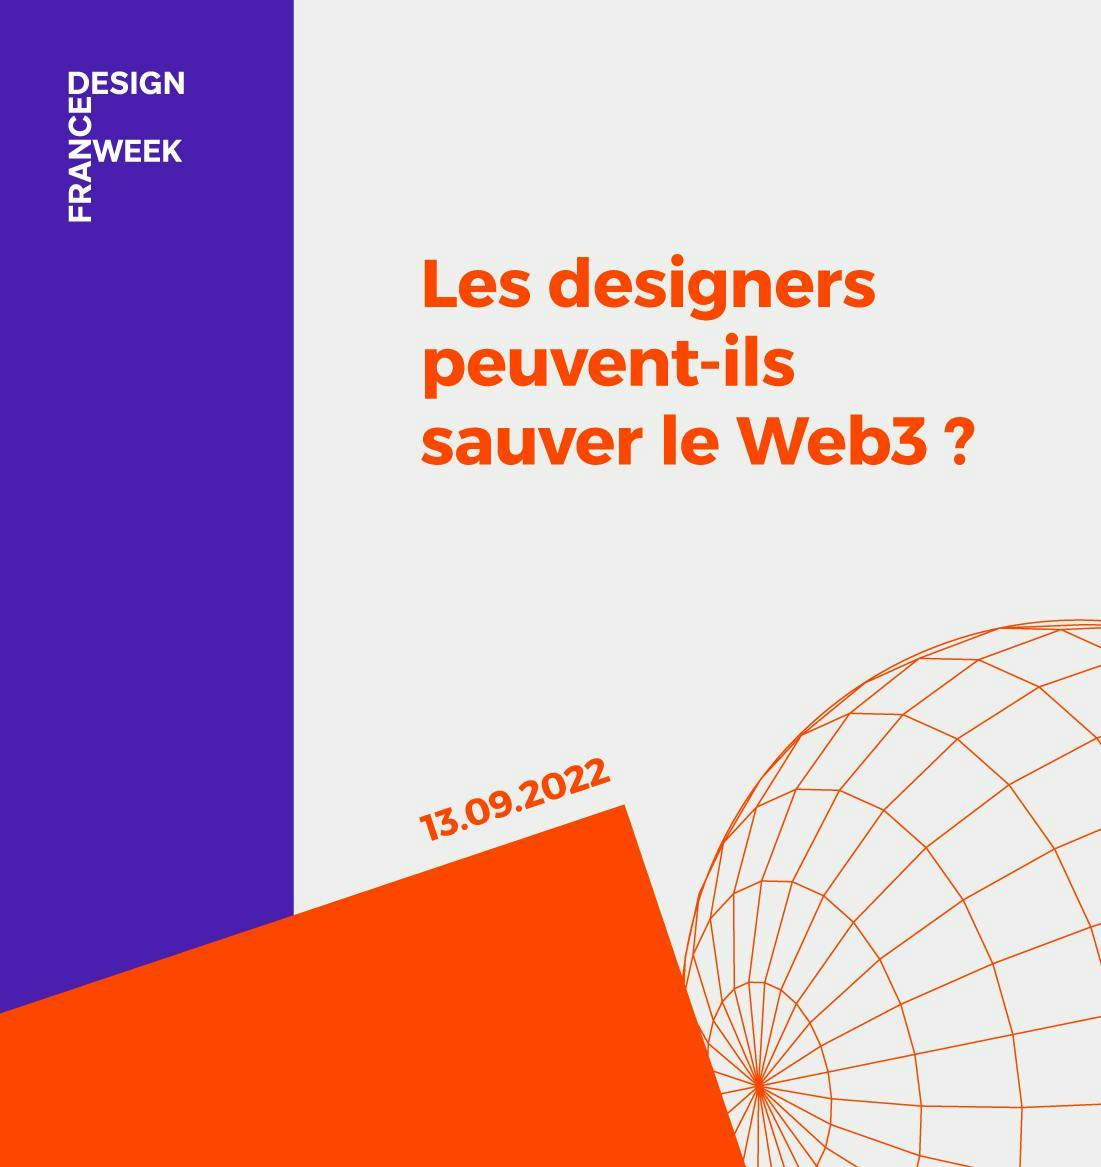 Les designers peuvent-ils sauver le Web3 ?